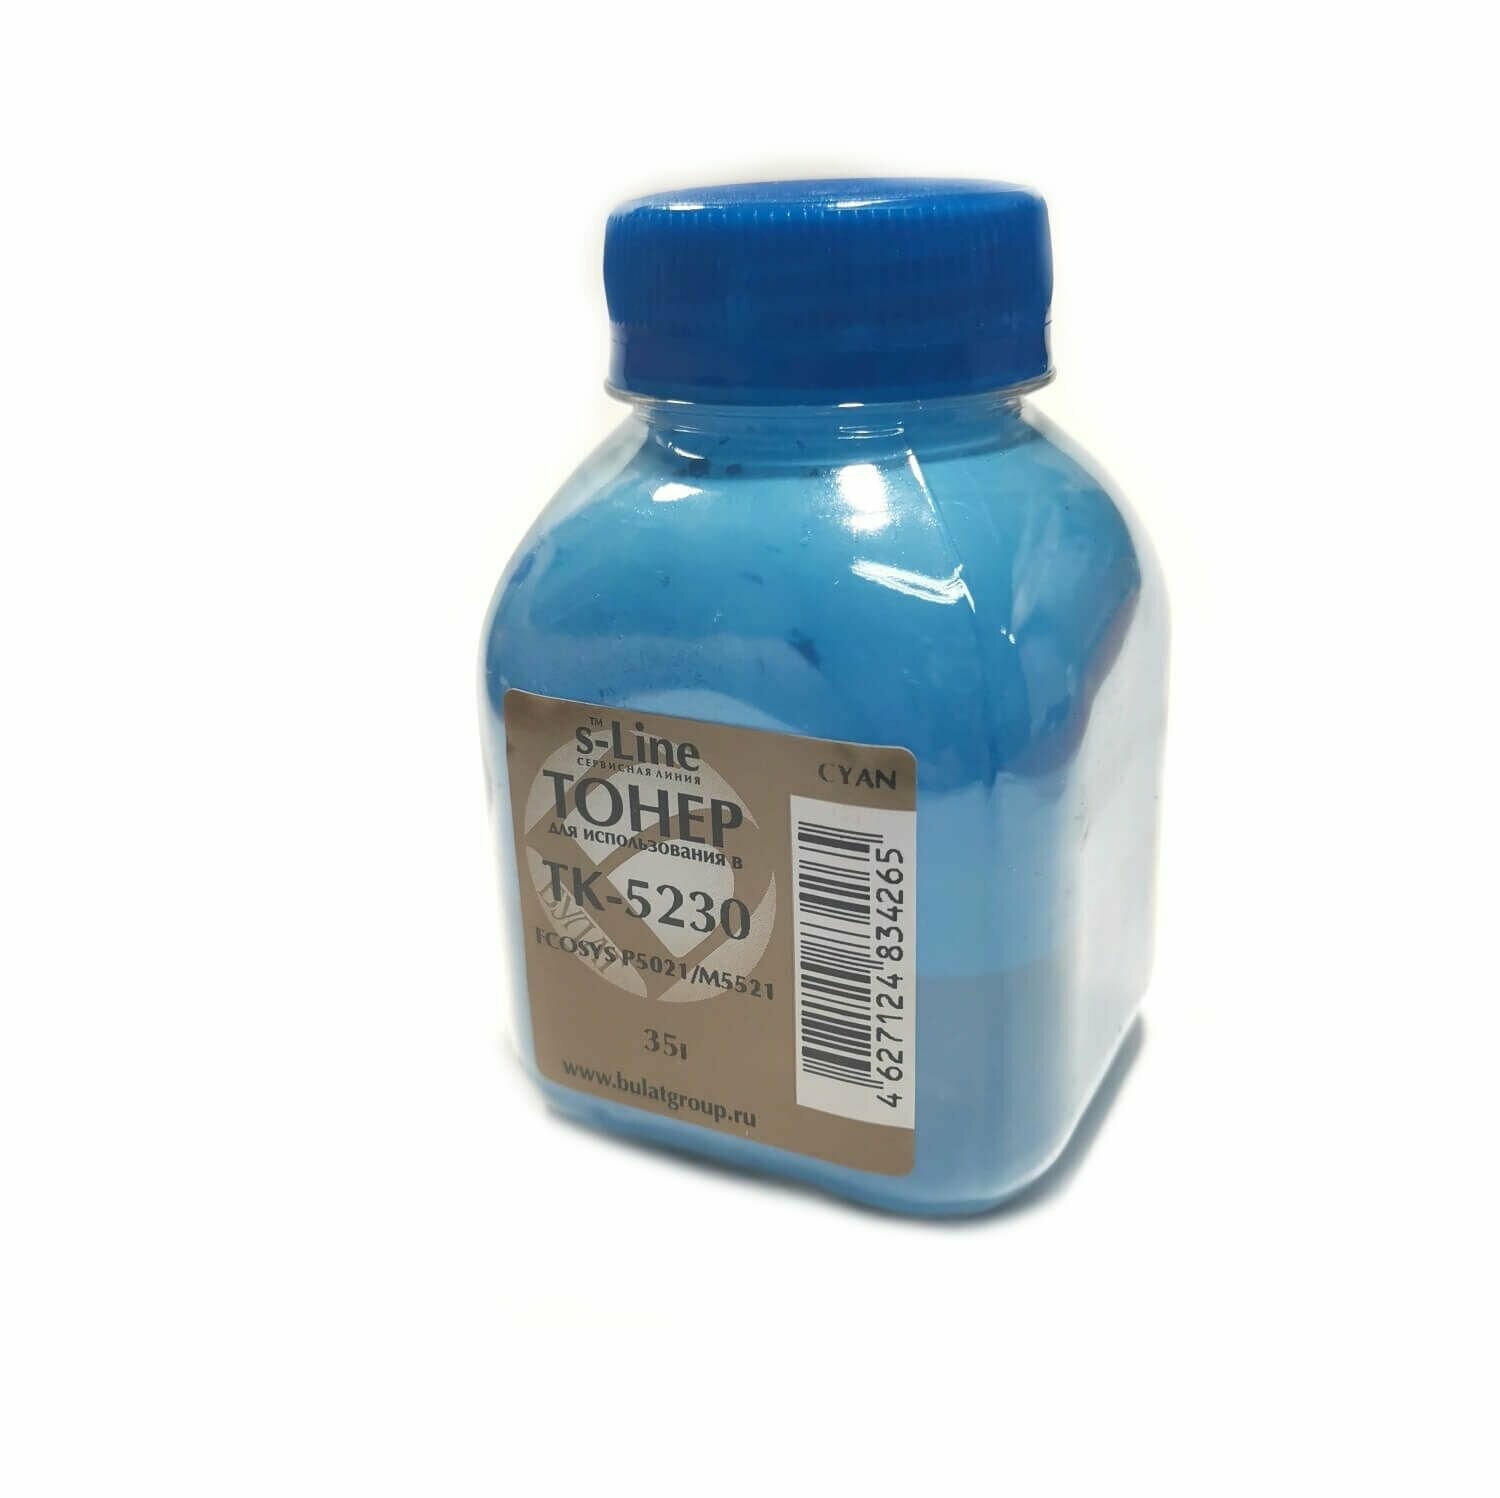 Тонер для картриджей Kyocera TK-5230 синий